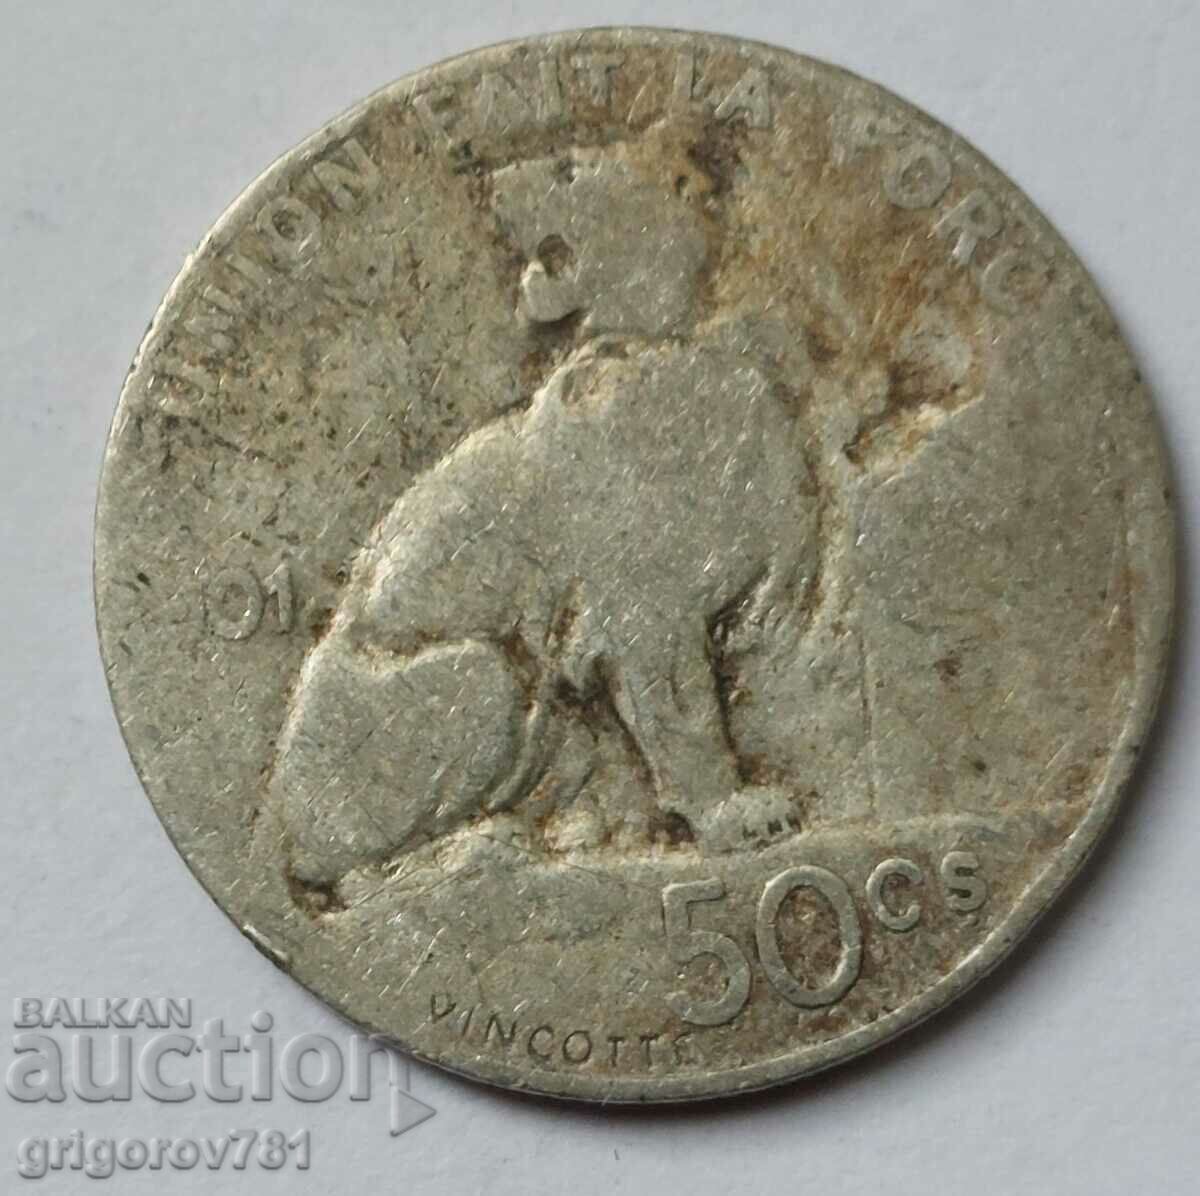 50 centimes silver Belgium 1901 - silver coin #77